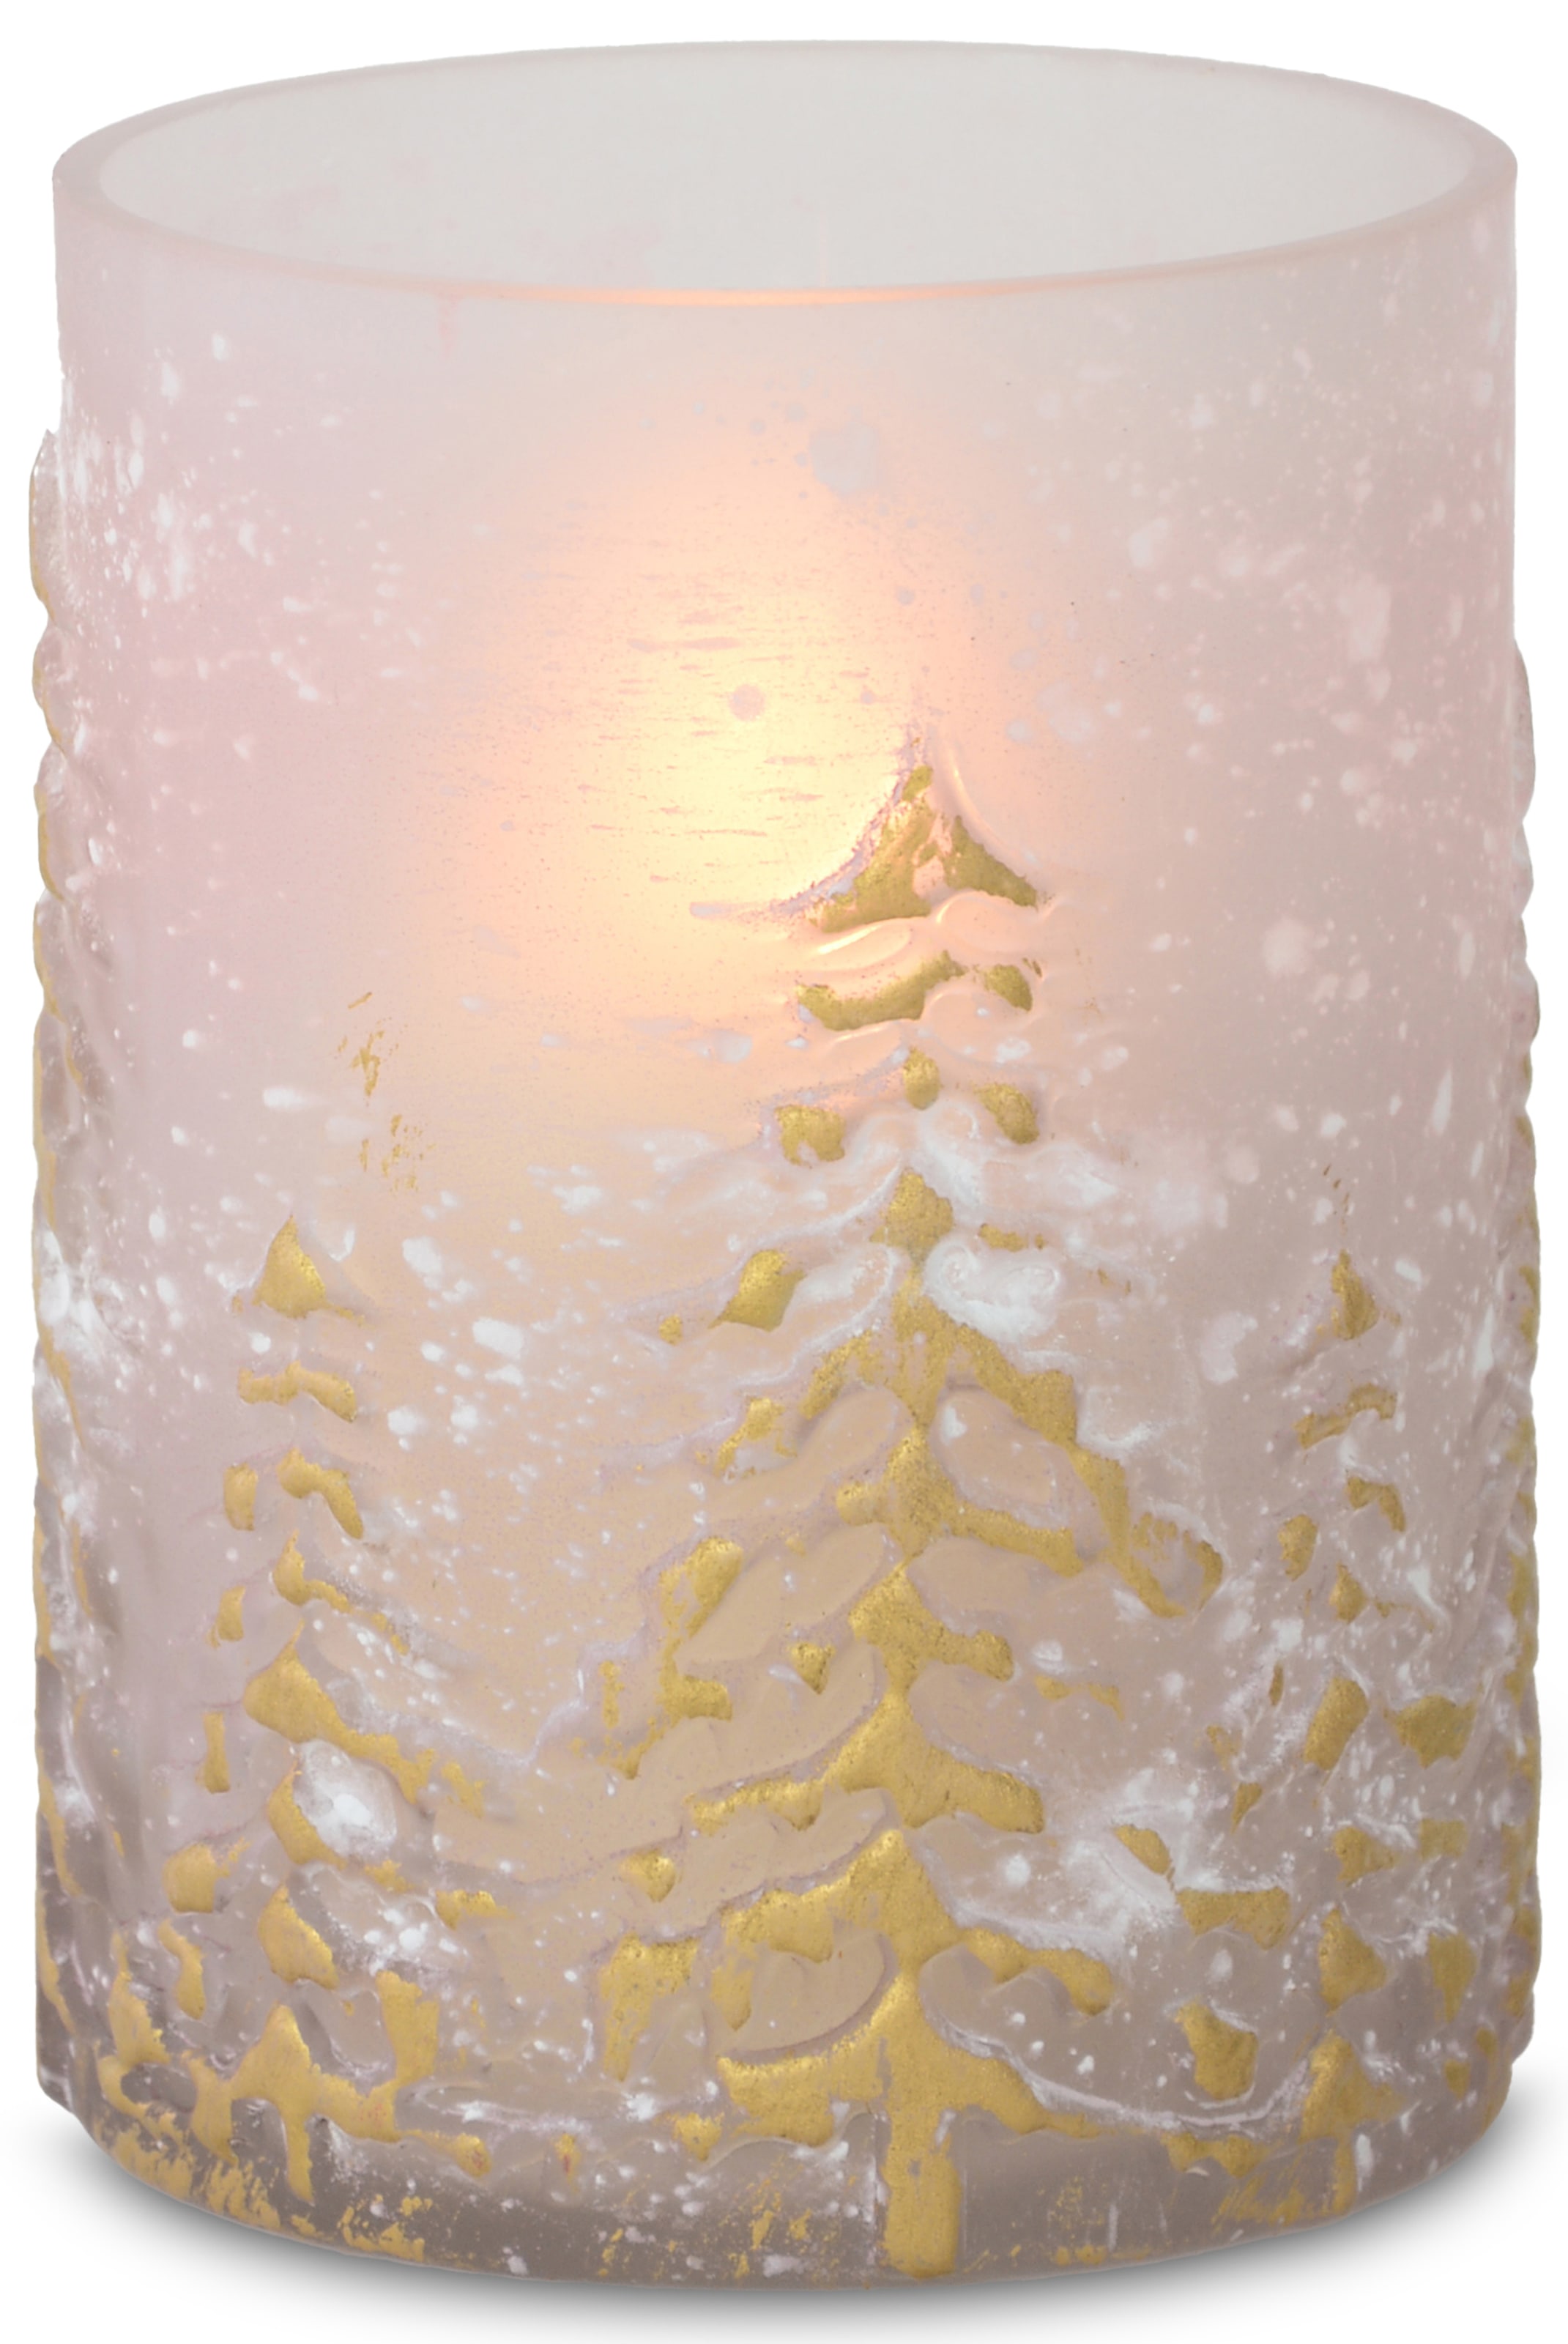 RIFFELMACHER & WEINBERGER Windlicht »mit dekorativen Baum-Motiv, Weihnachtsdeko«, (1 St.), Edle Strukturen im Glas, feiner Schimmer-Effekt, Kerzenleuchter